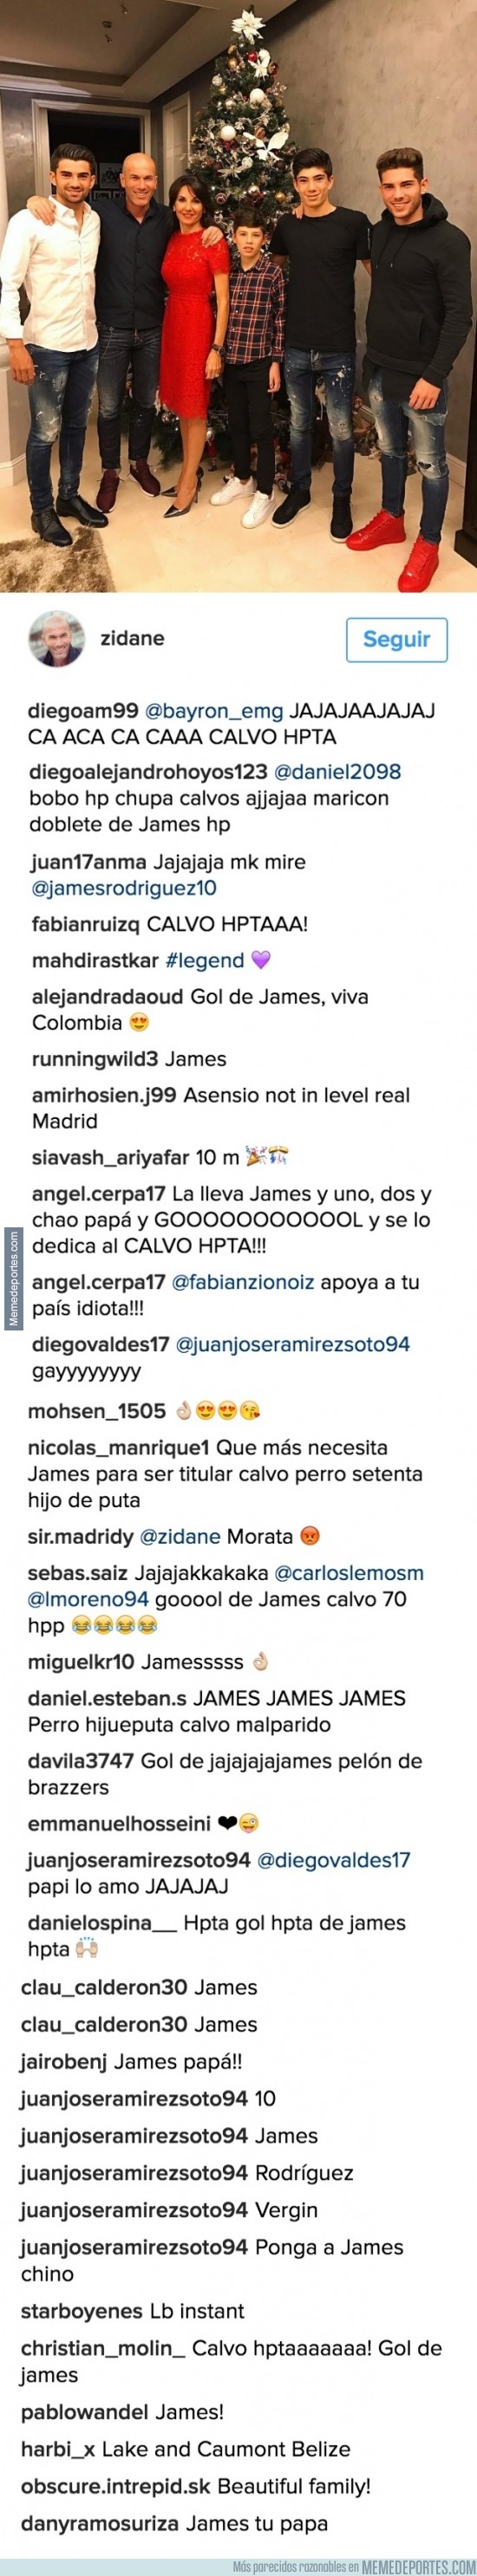 936849 - Fans de James acuden al instagram de Zidane solo para insultarlo